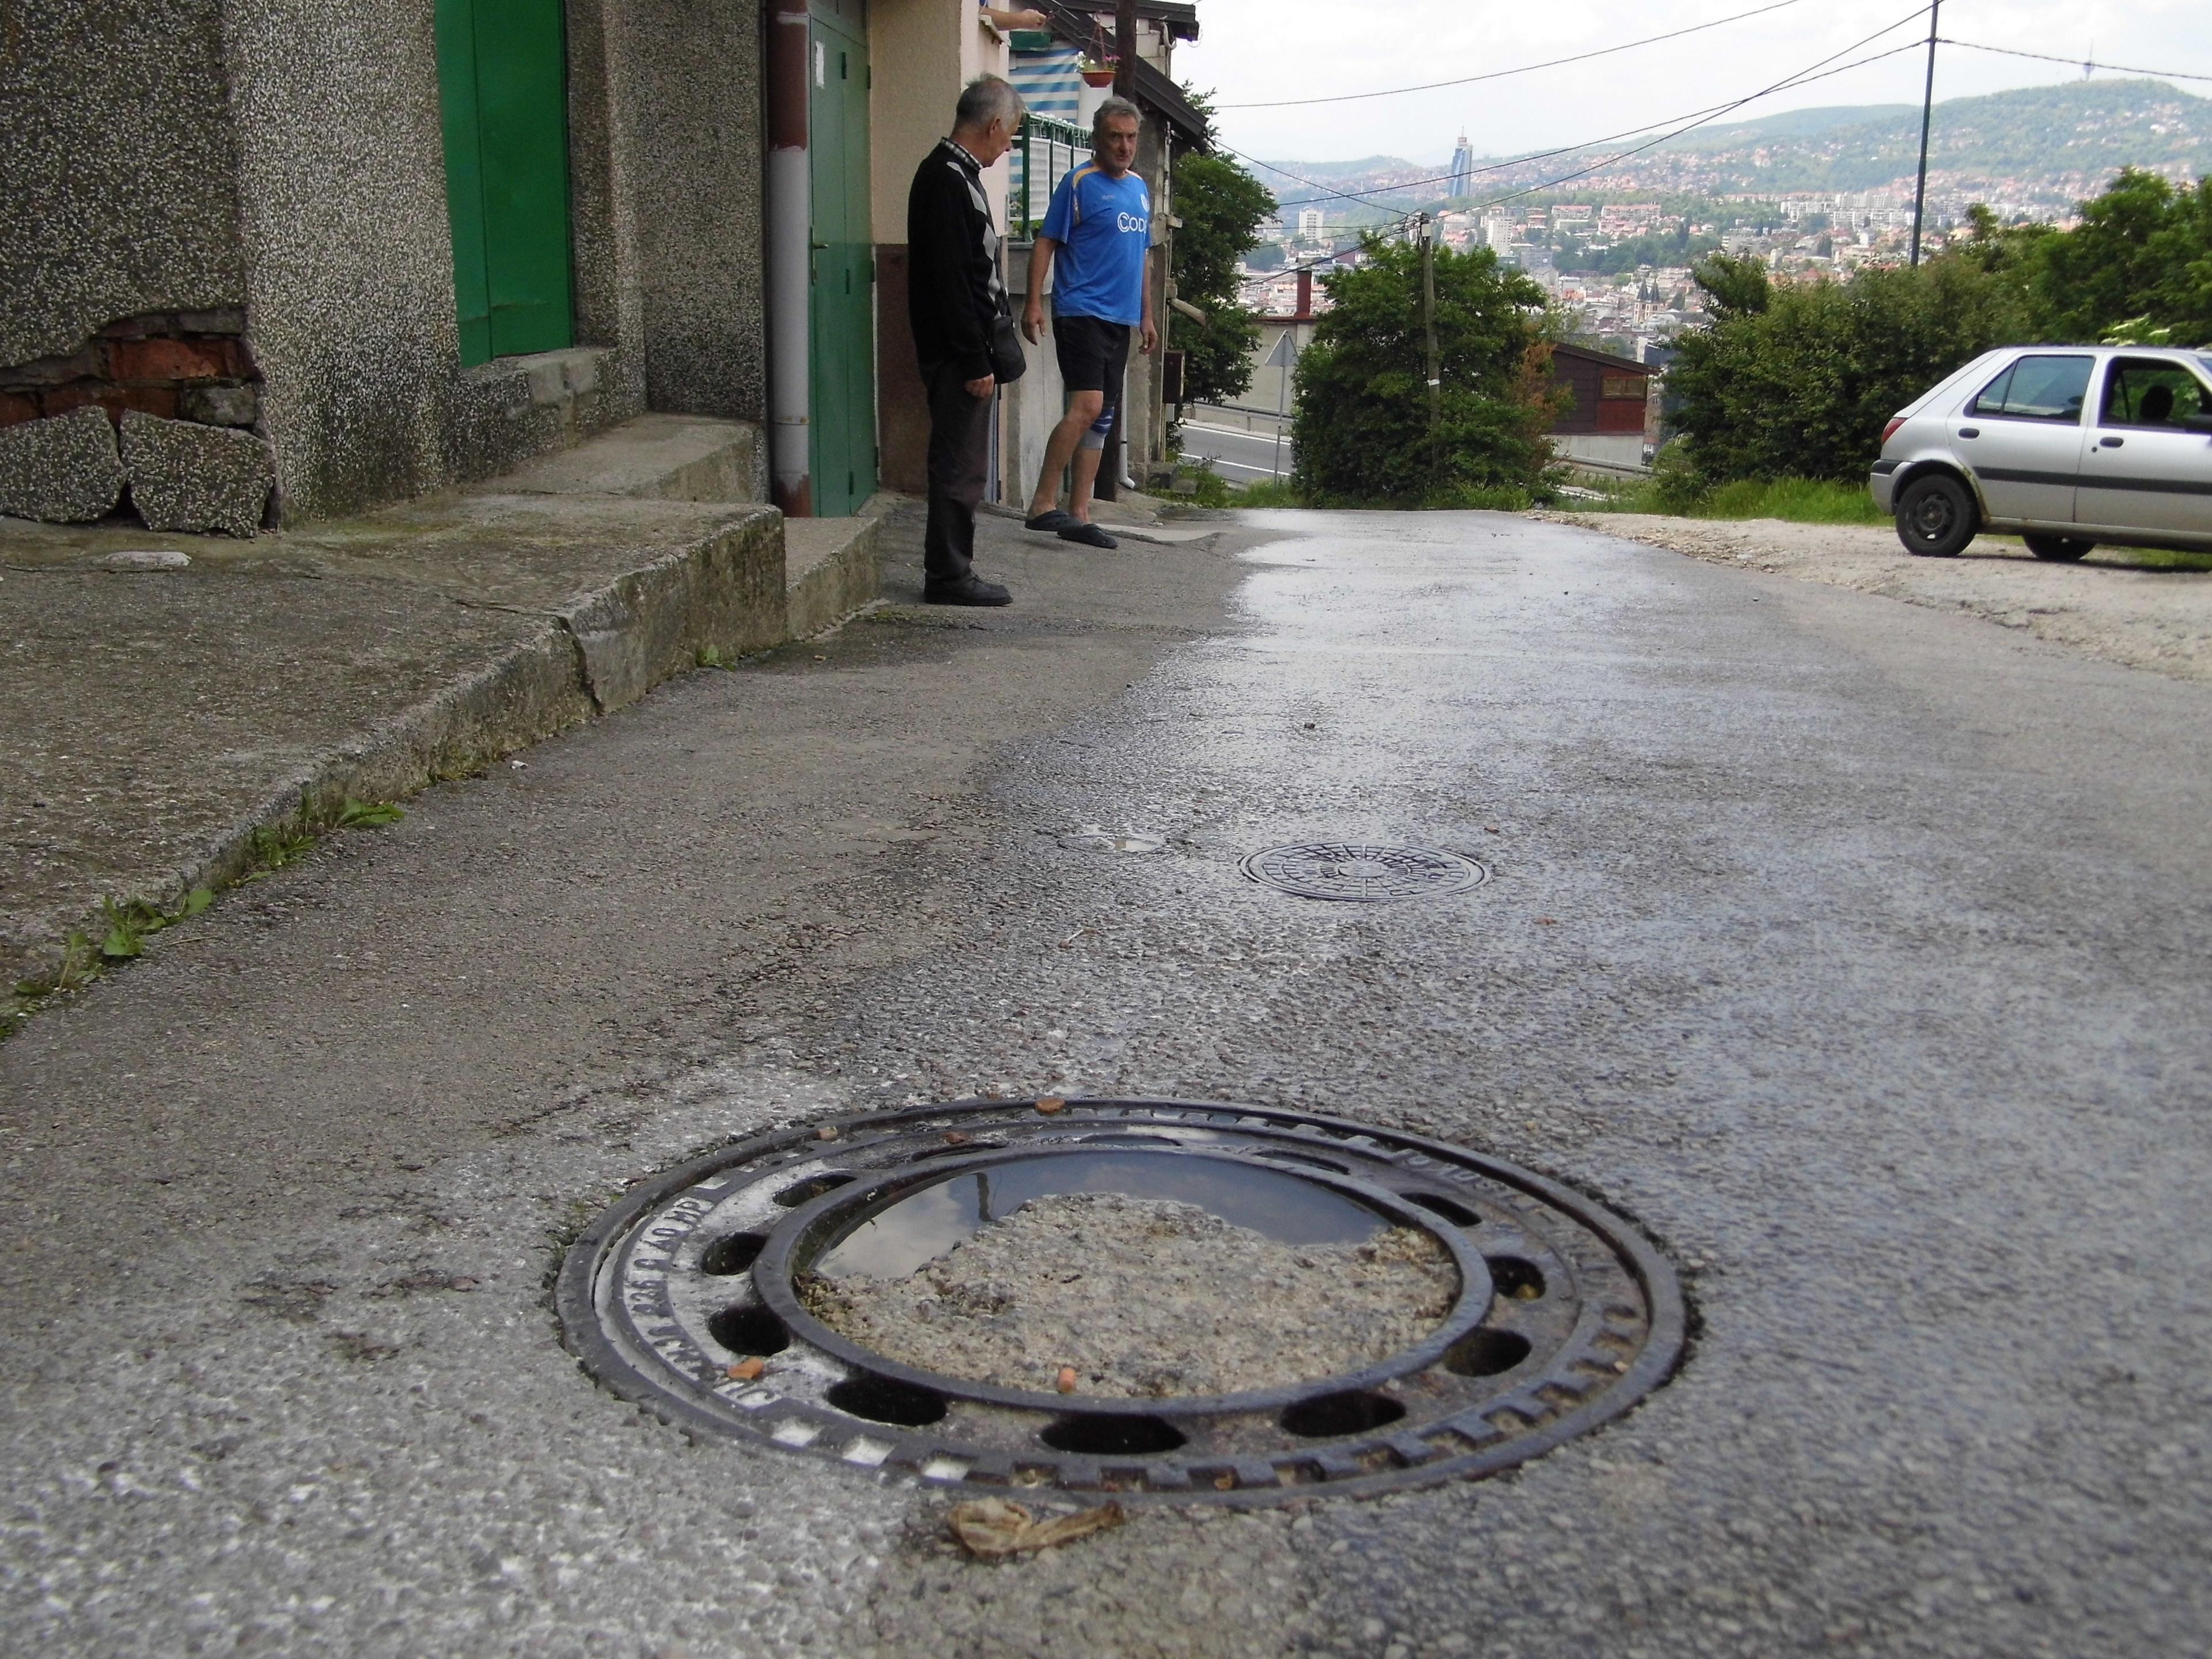 Problemi s dotrajalim kanalizacionim cijevima u Sarajevu: Kad kiša pada, ne mogu izaći iz kuće!